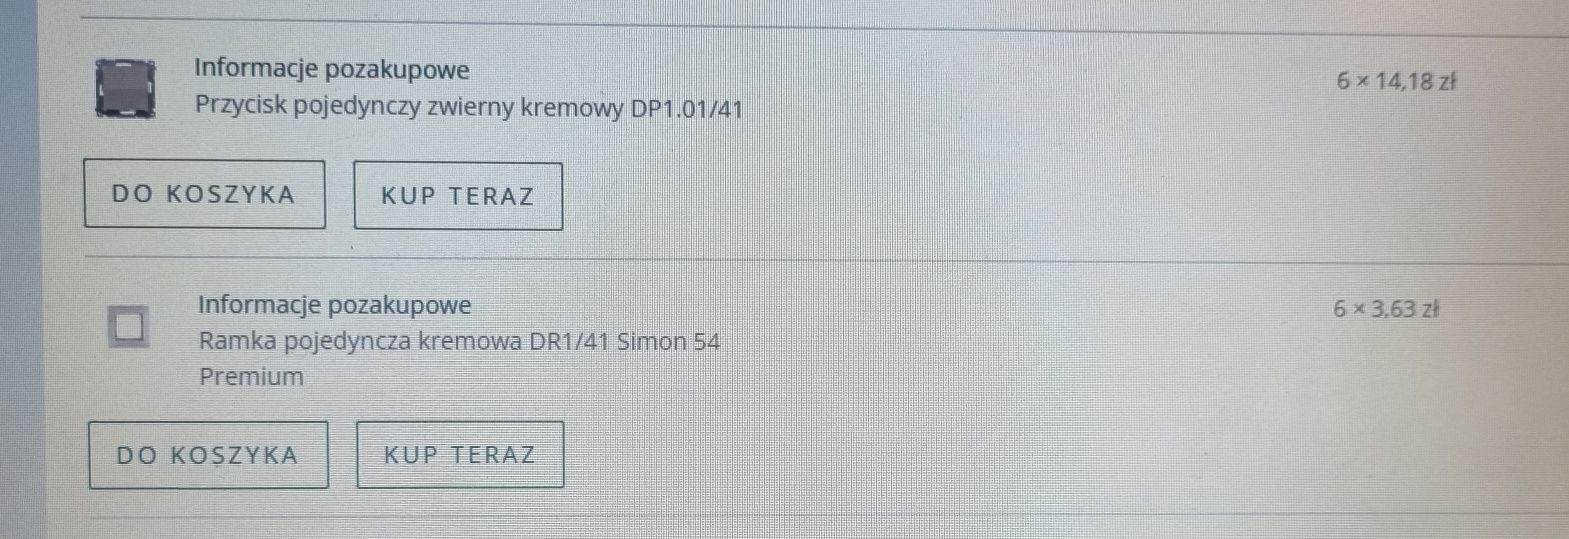 SIMONE przycisk pojedynczy zwierny kremowy DP1.01/41